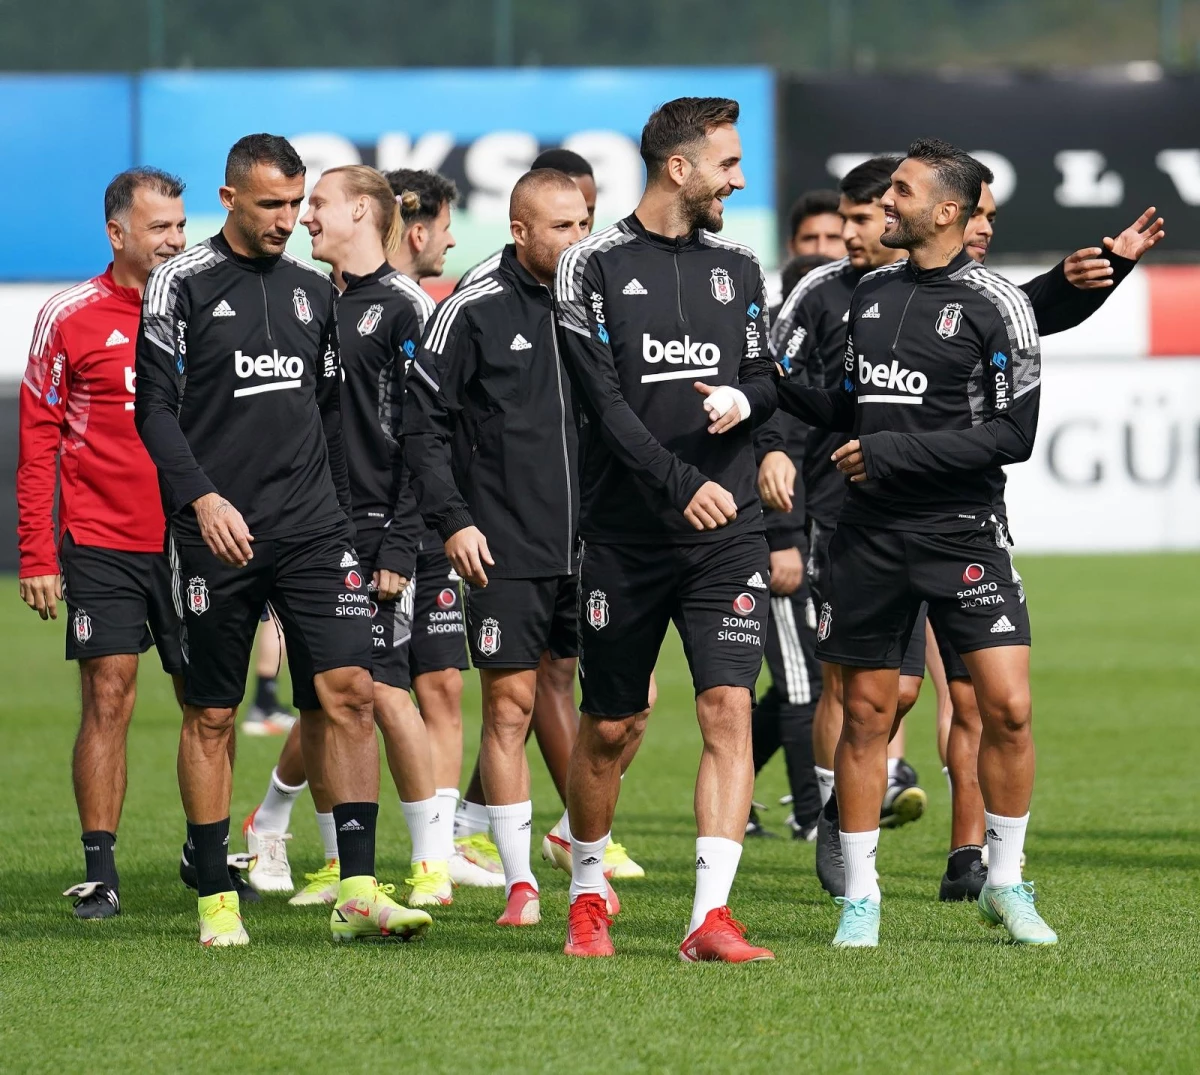 Beşiktaş, Hatayspor maçı hazırlıklarına başladı